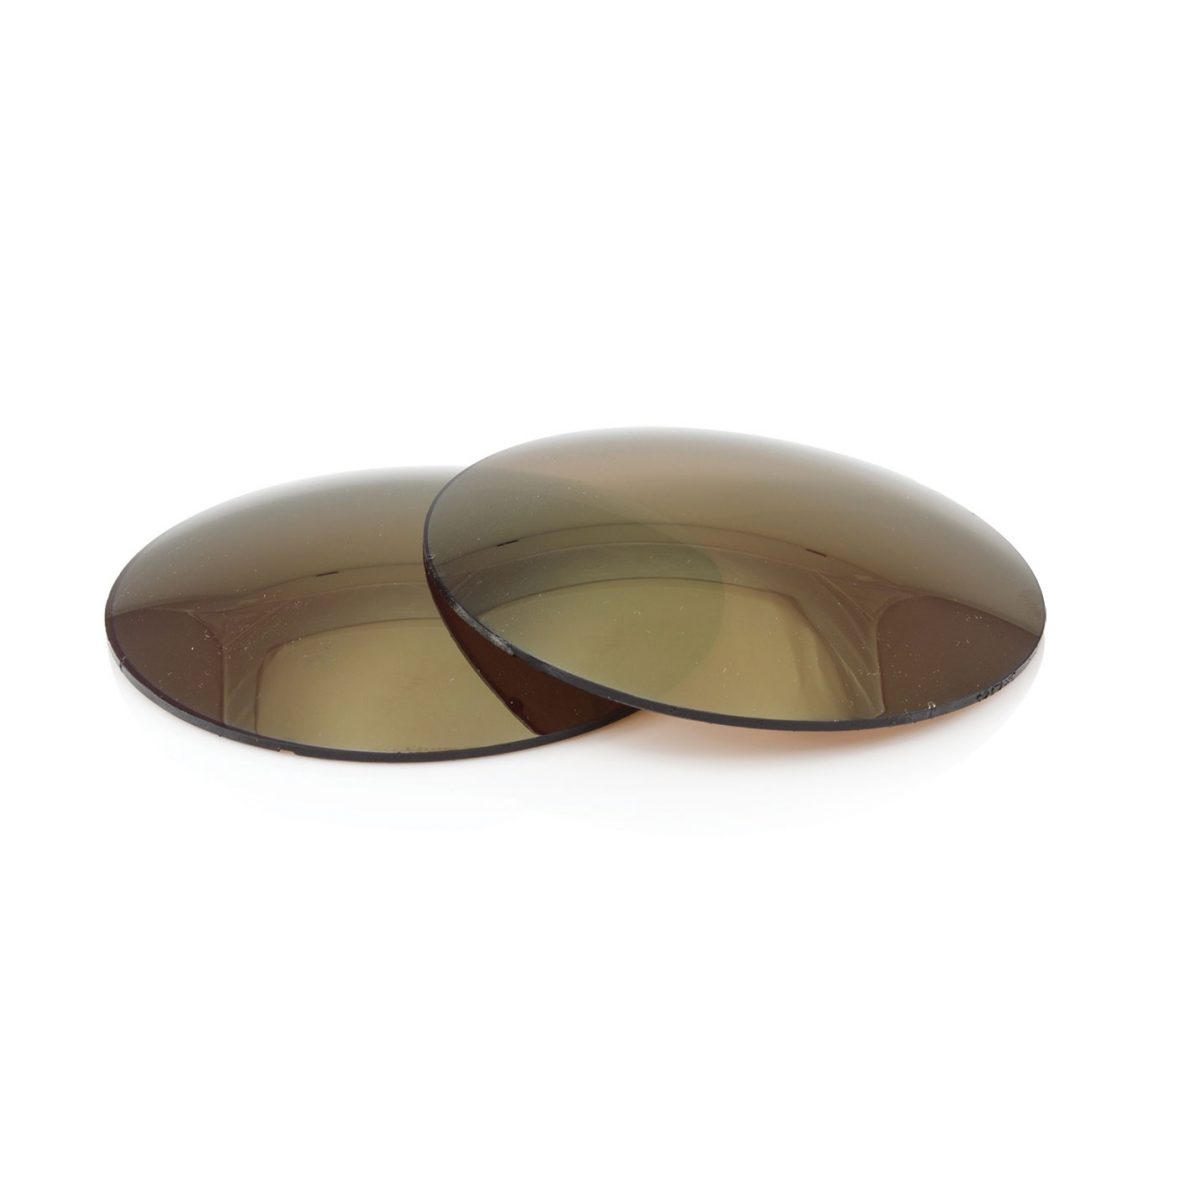 Lentilles UV400 CR39 Flash Mirror - 85% obscurité